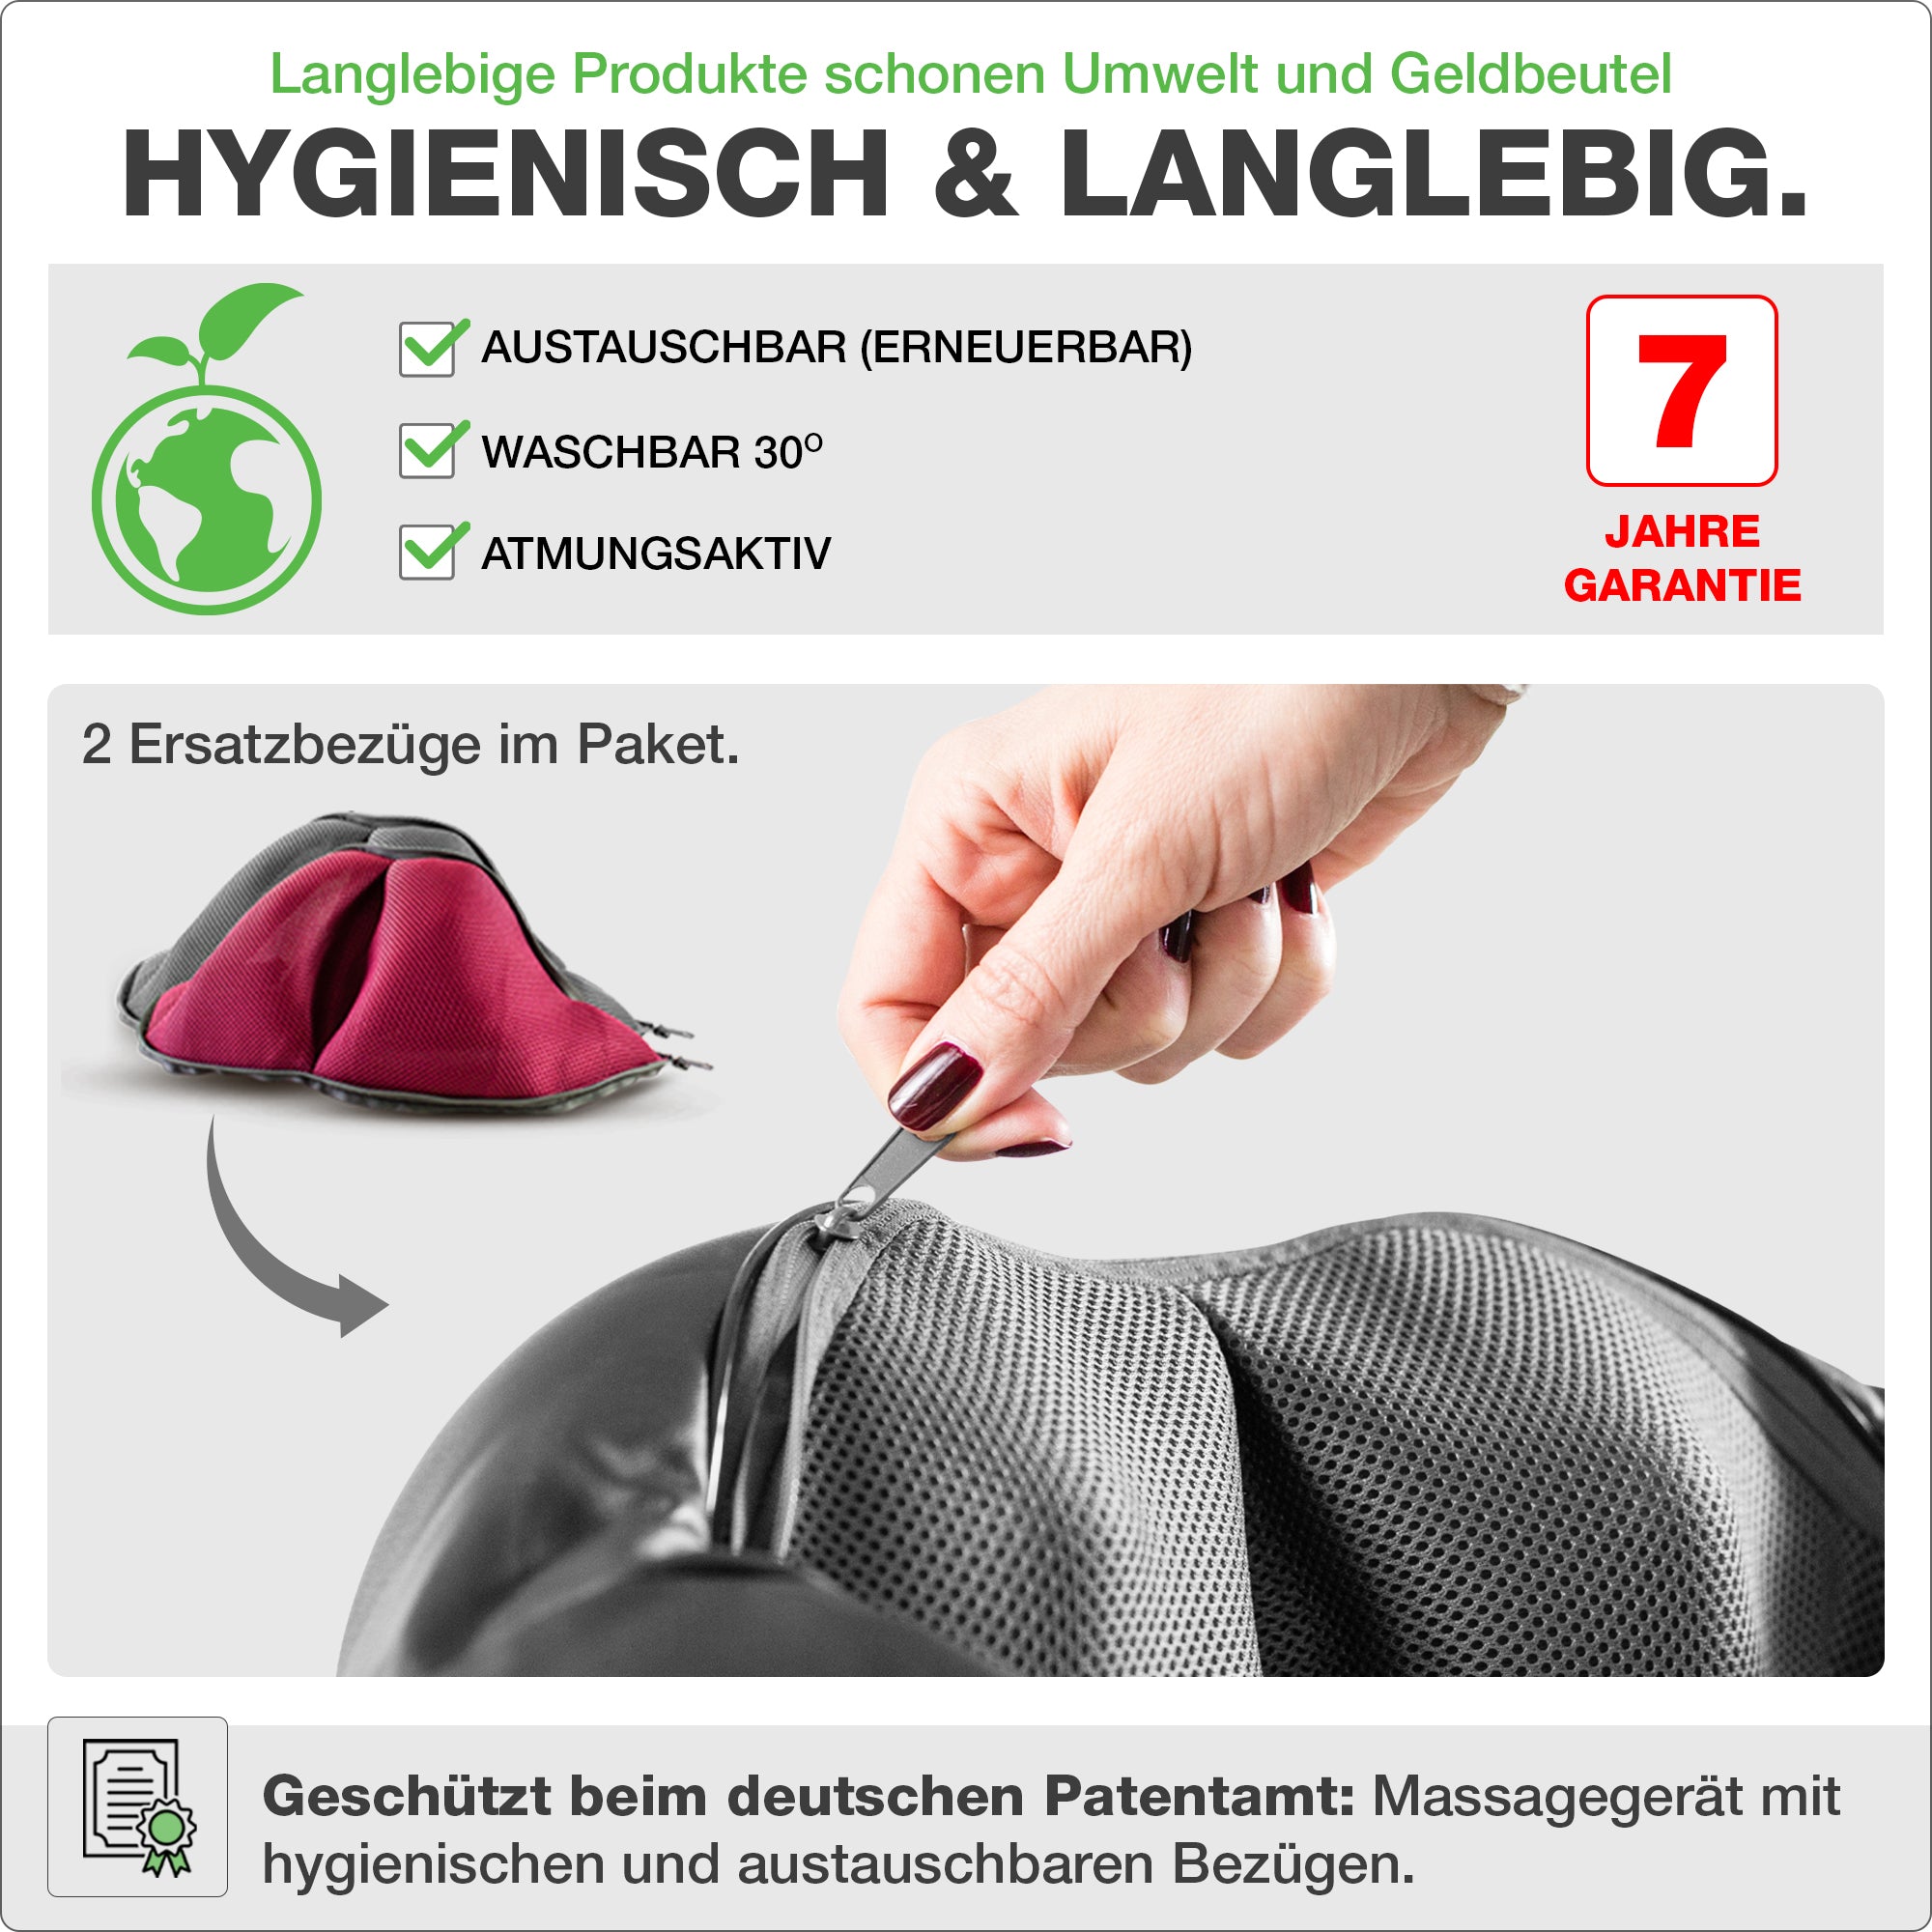 Hygienisch und langlebig: austauschbare und waschbare Ersatzbezüge.